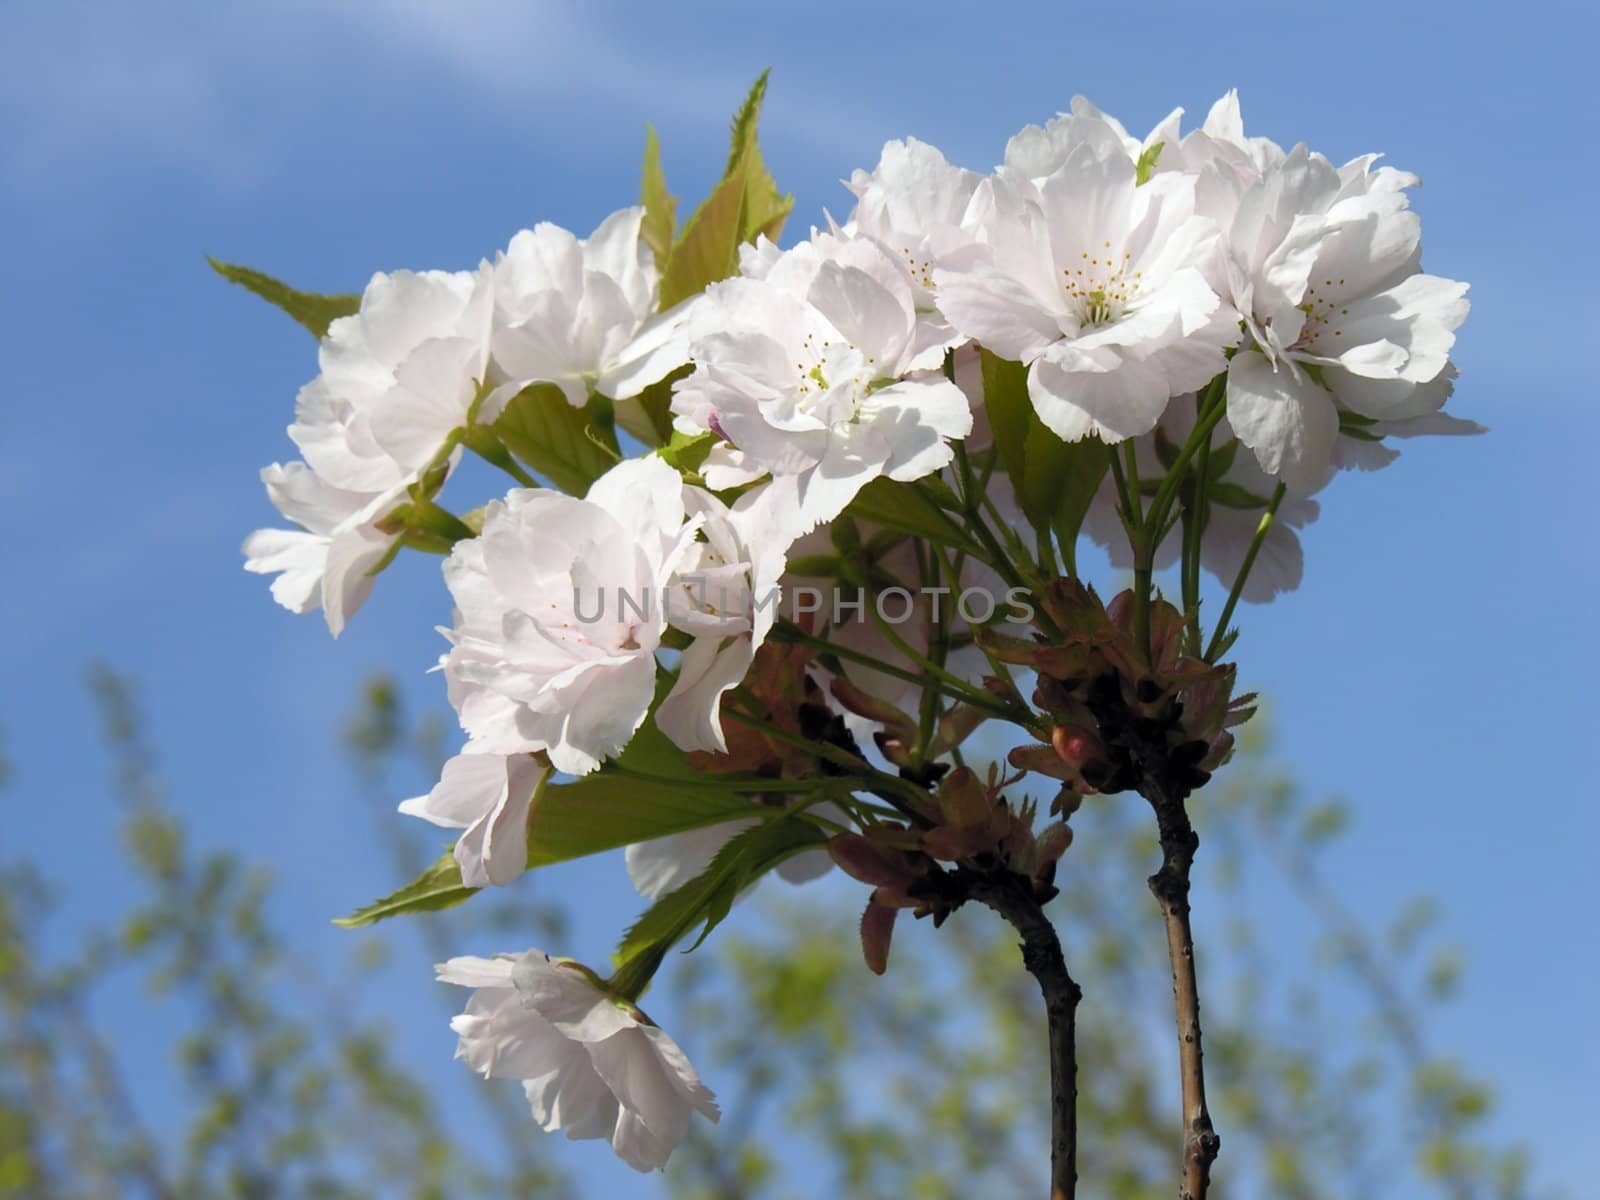 decorative bush in blossom